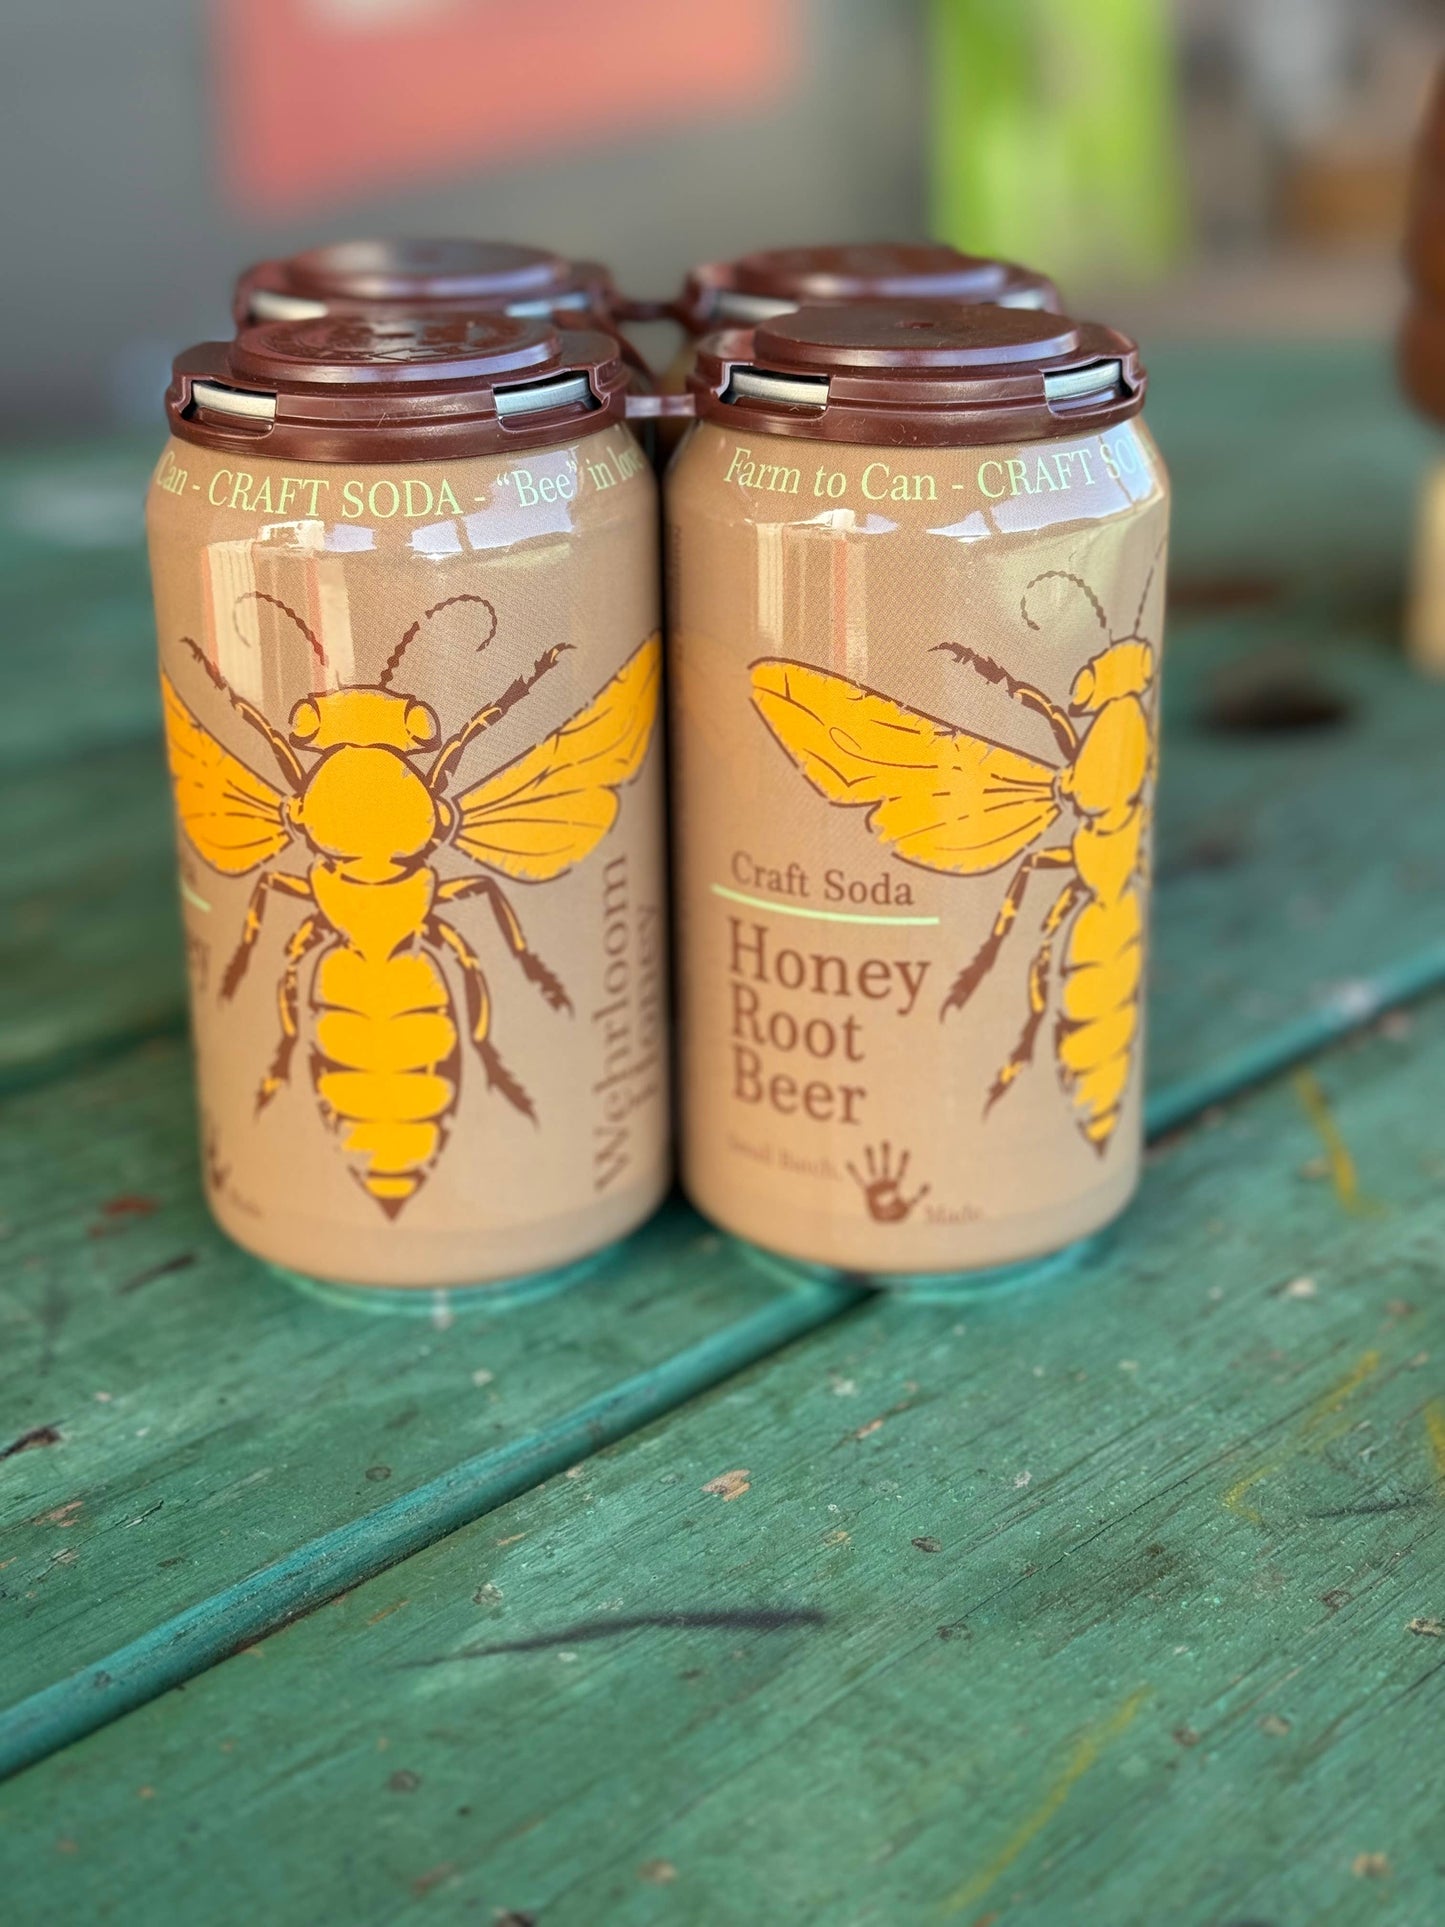 Honey Root Beer